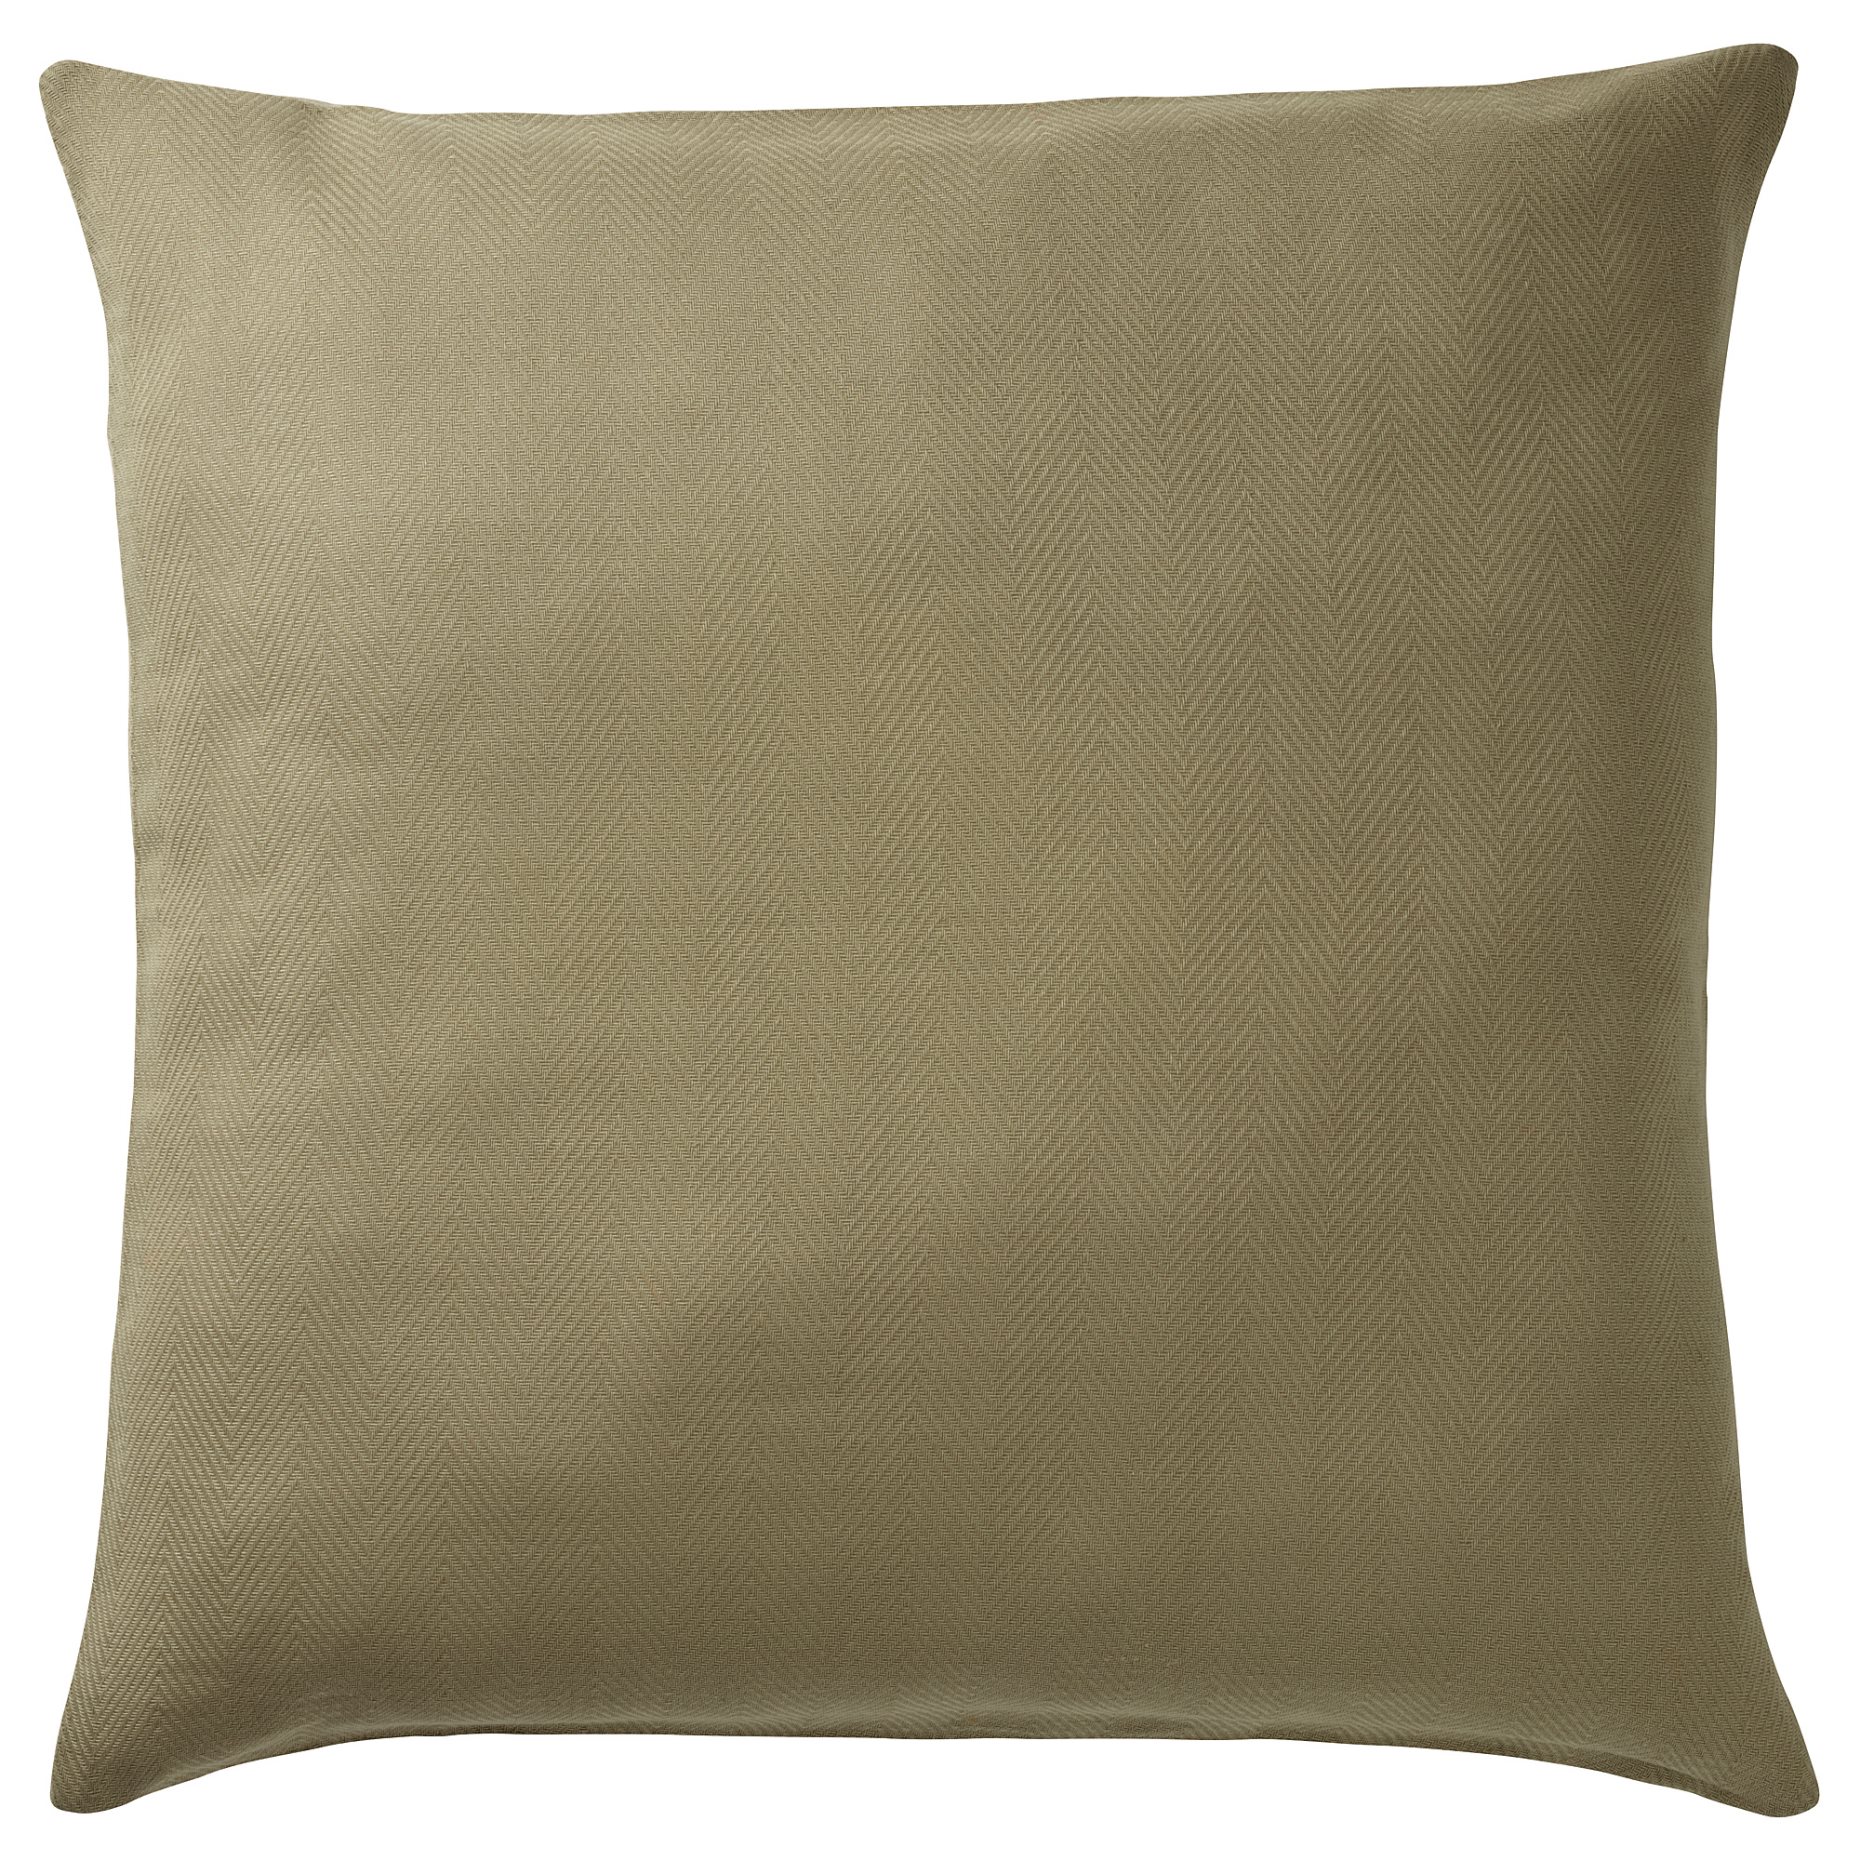 PRAKTSALVIA, cushion cover, 50x50 cm, 705.115.78